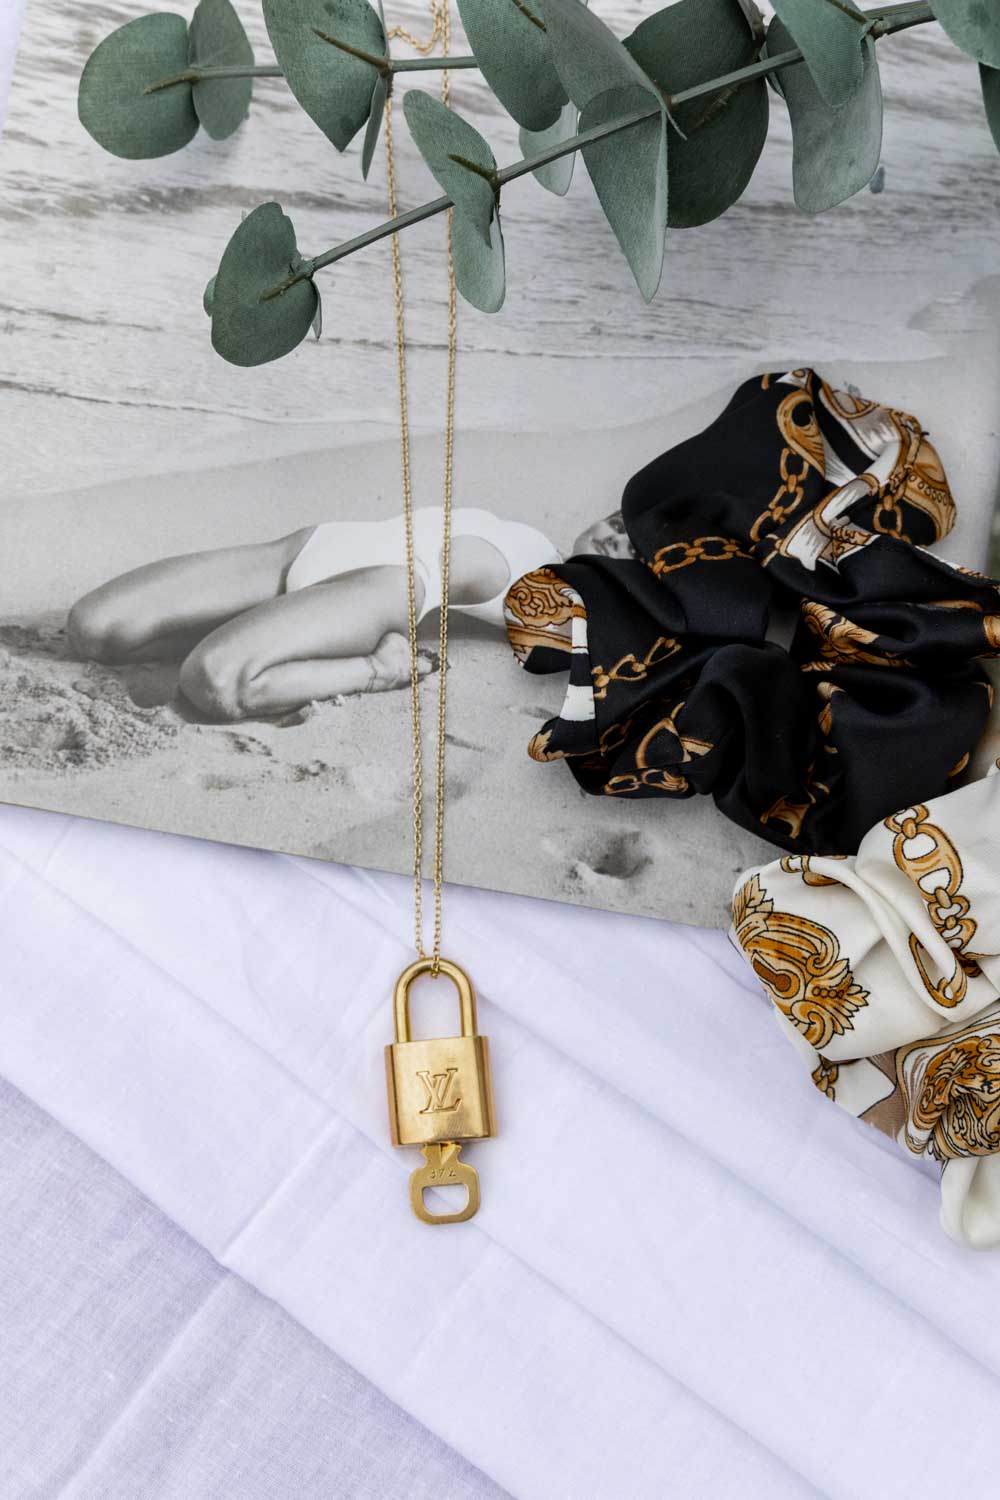 Louis Vuitton Luggage Lock Necklace-Junkyard Chic Chain